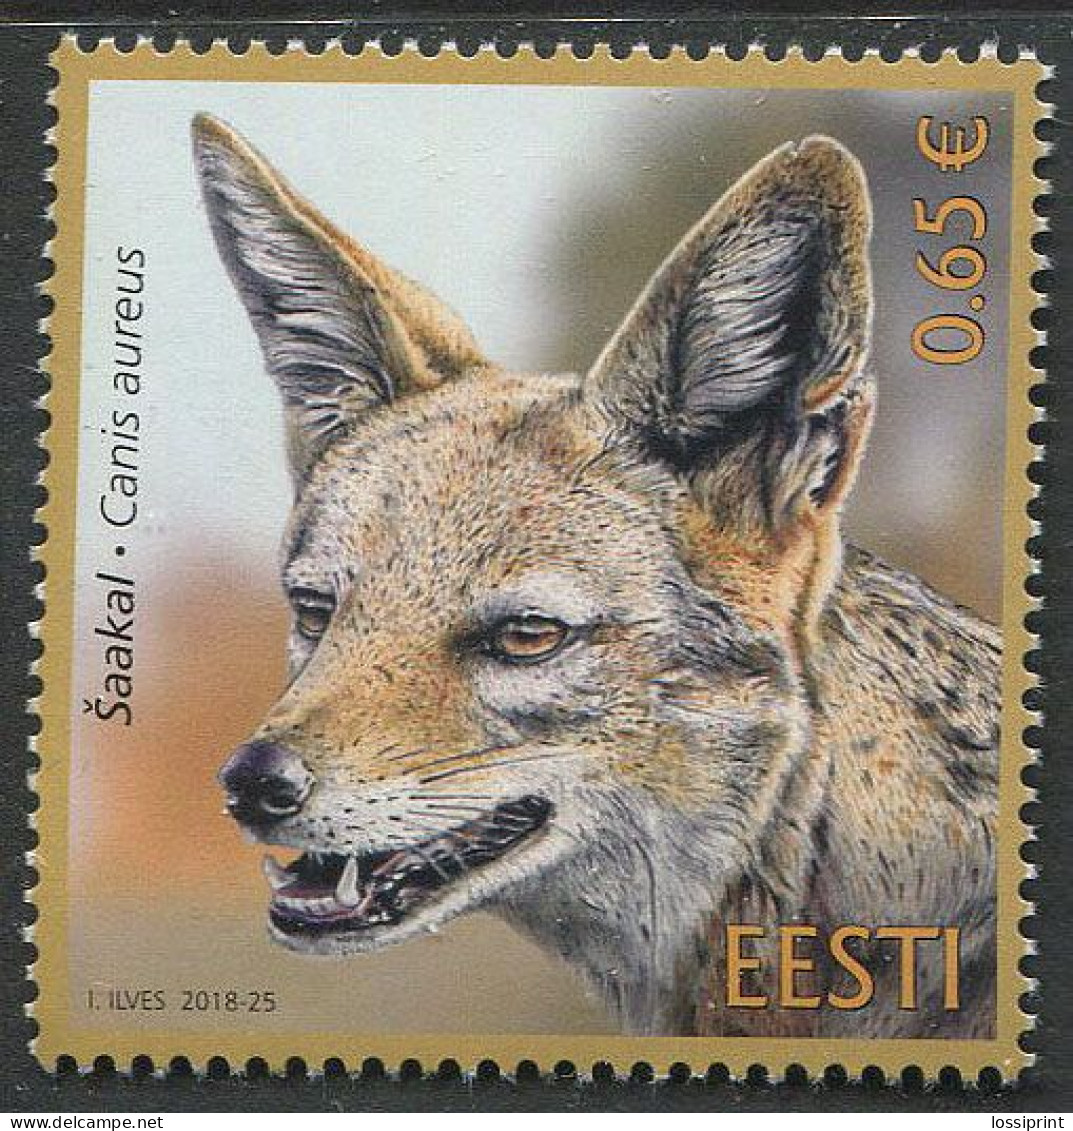 Estonia:Unused Stamp Animal, Jackal, Canis Aureus, 2018, MNH - Estonie